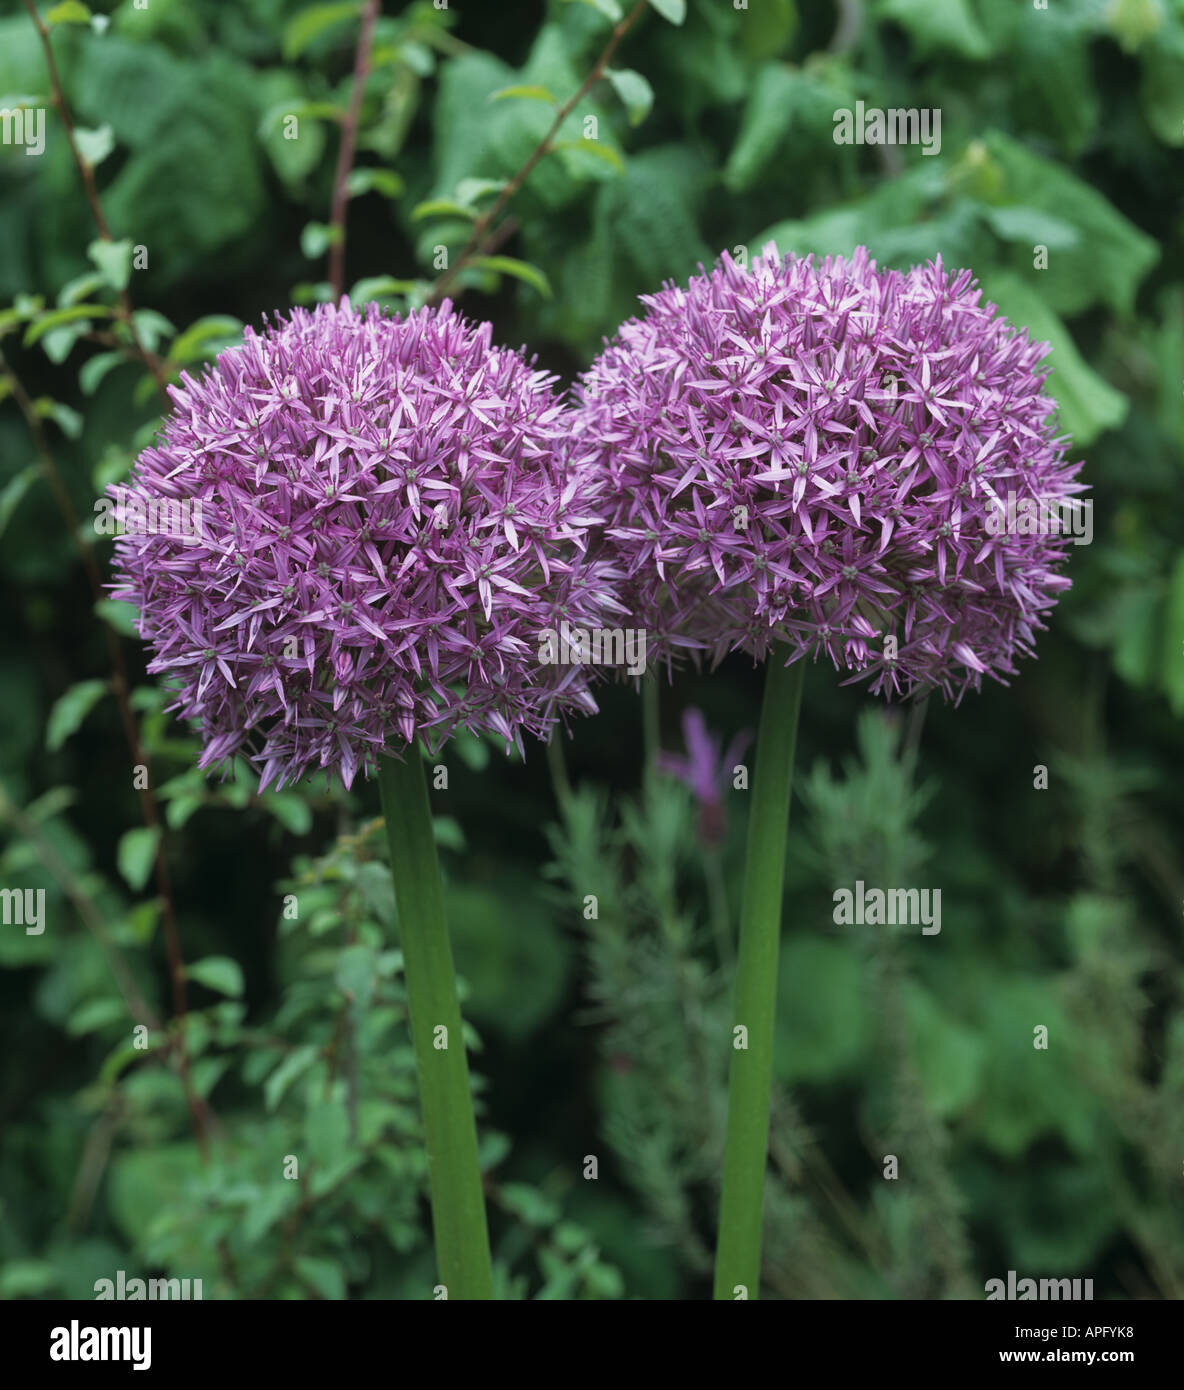 Allium Globemaster purple round flowerheads Stock Photo